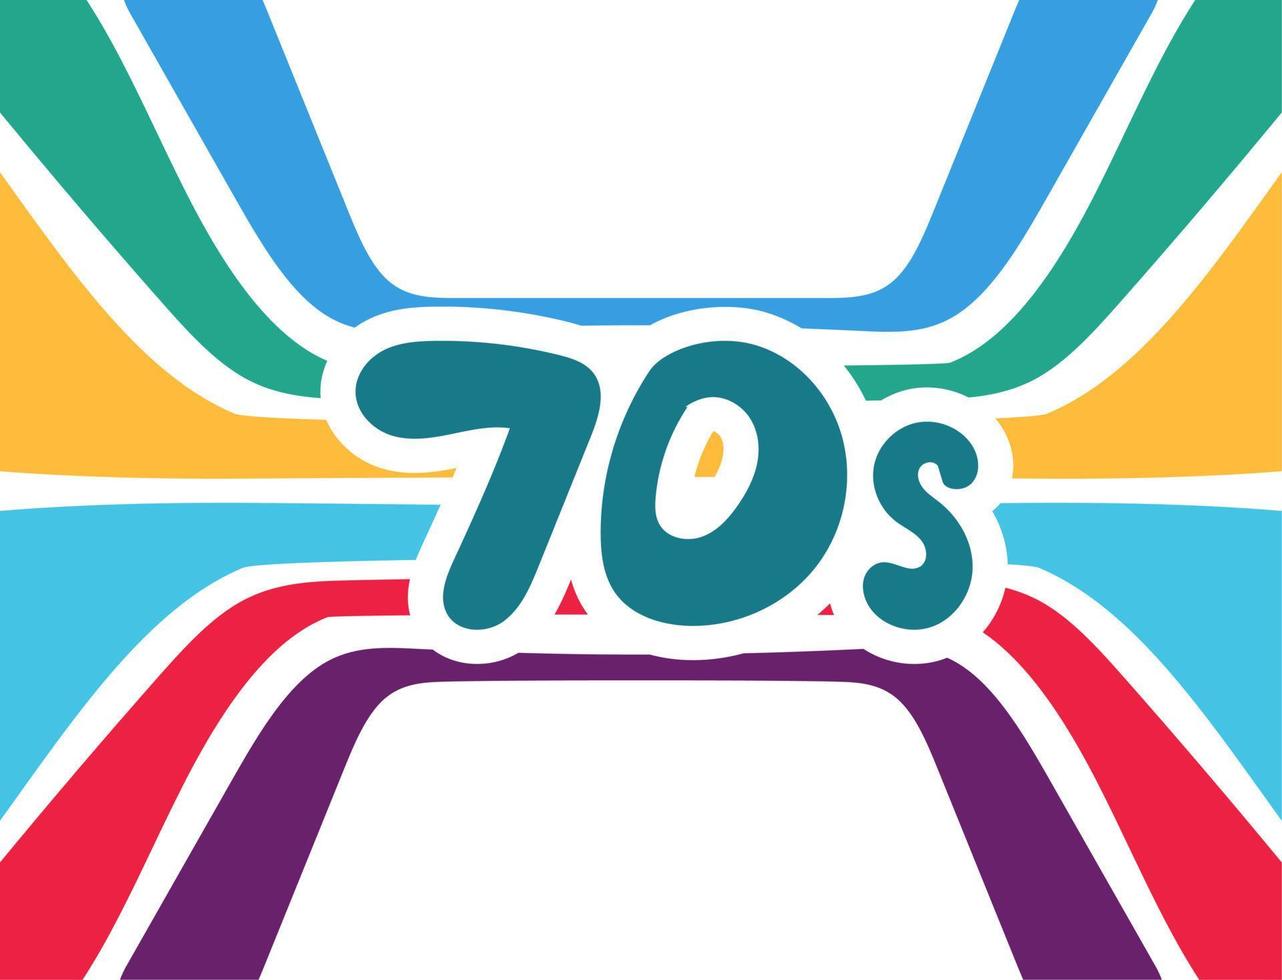 letras dos anos 70 com arco-íris no estilo retrô dos anos 70. inscrição multicolorida de boas vibrações. ilustração vetorial vetor